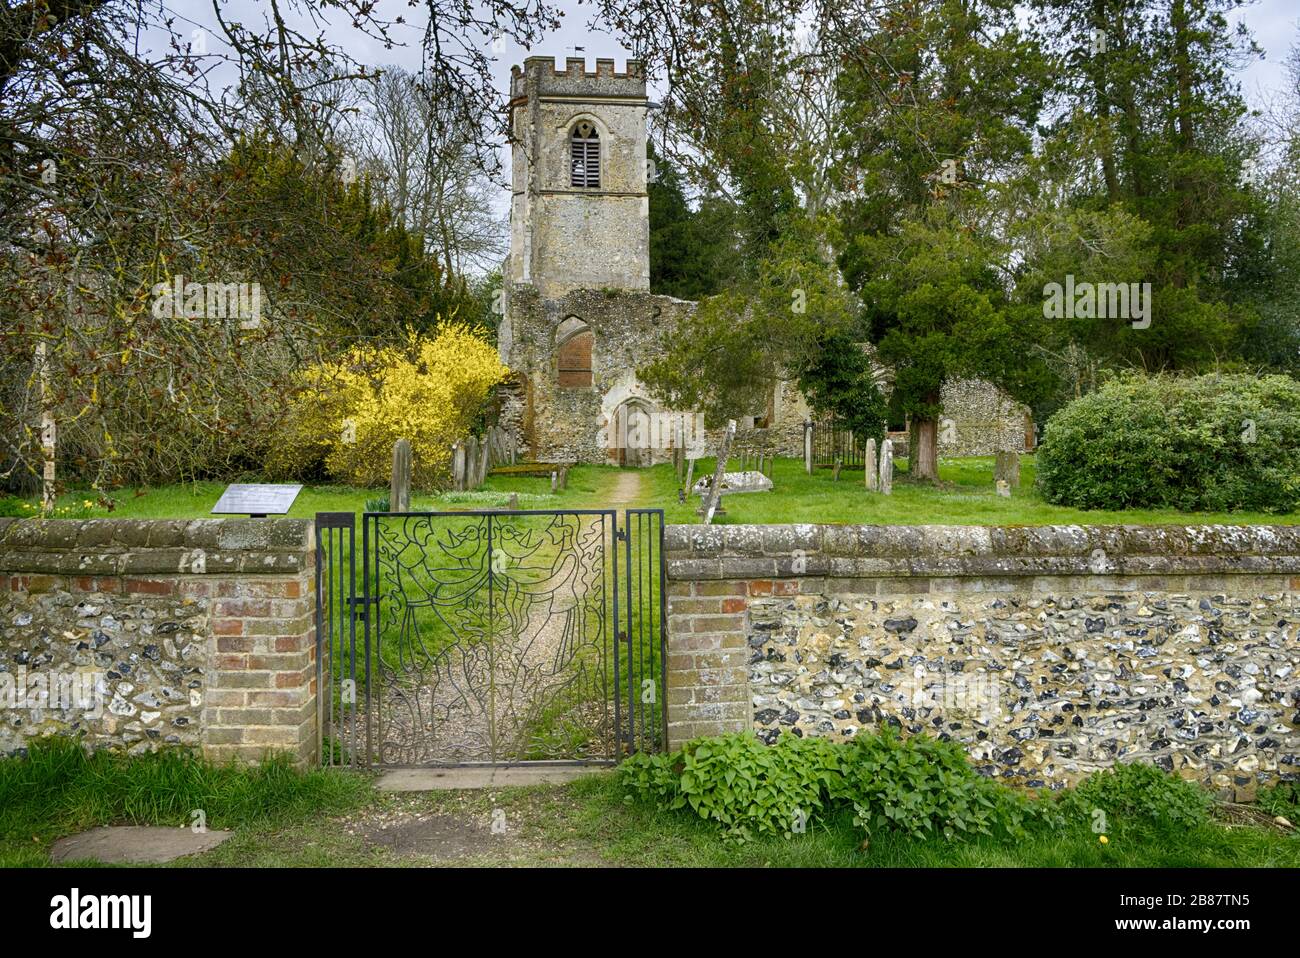 Photographies prises dans et autour du petit village d'Ayot St Lawrence dans le Hertfordshire Royaume-Uni Banque D'Images